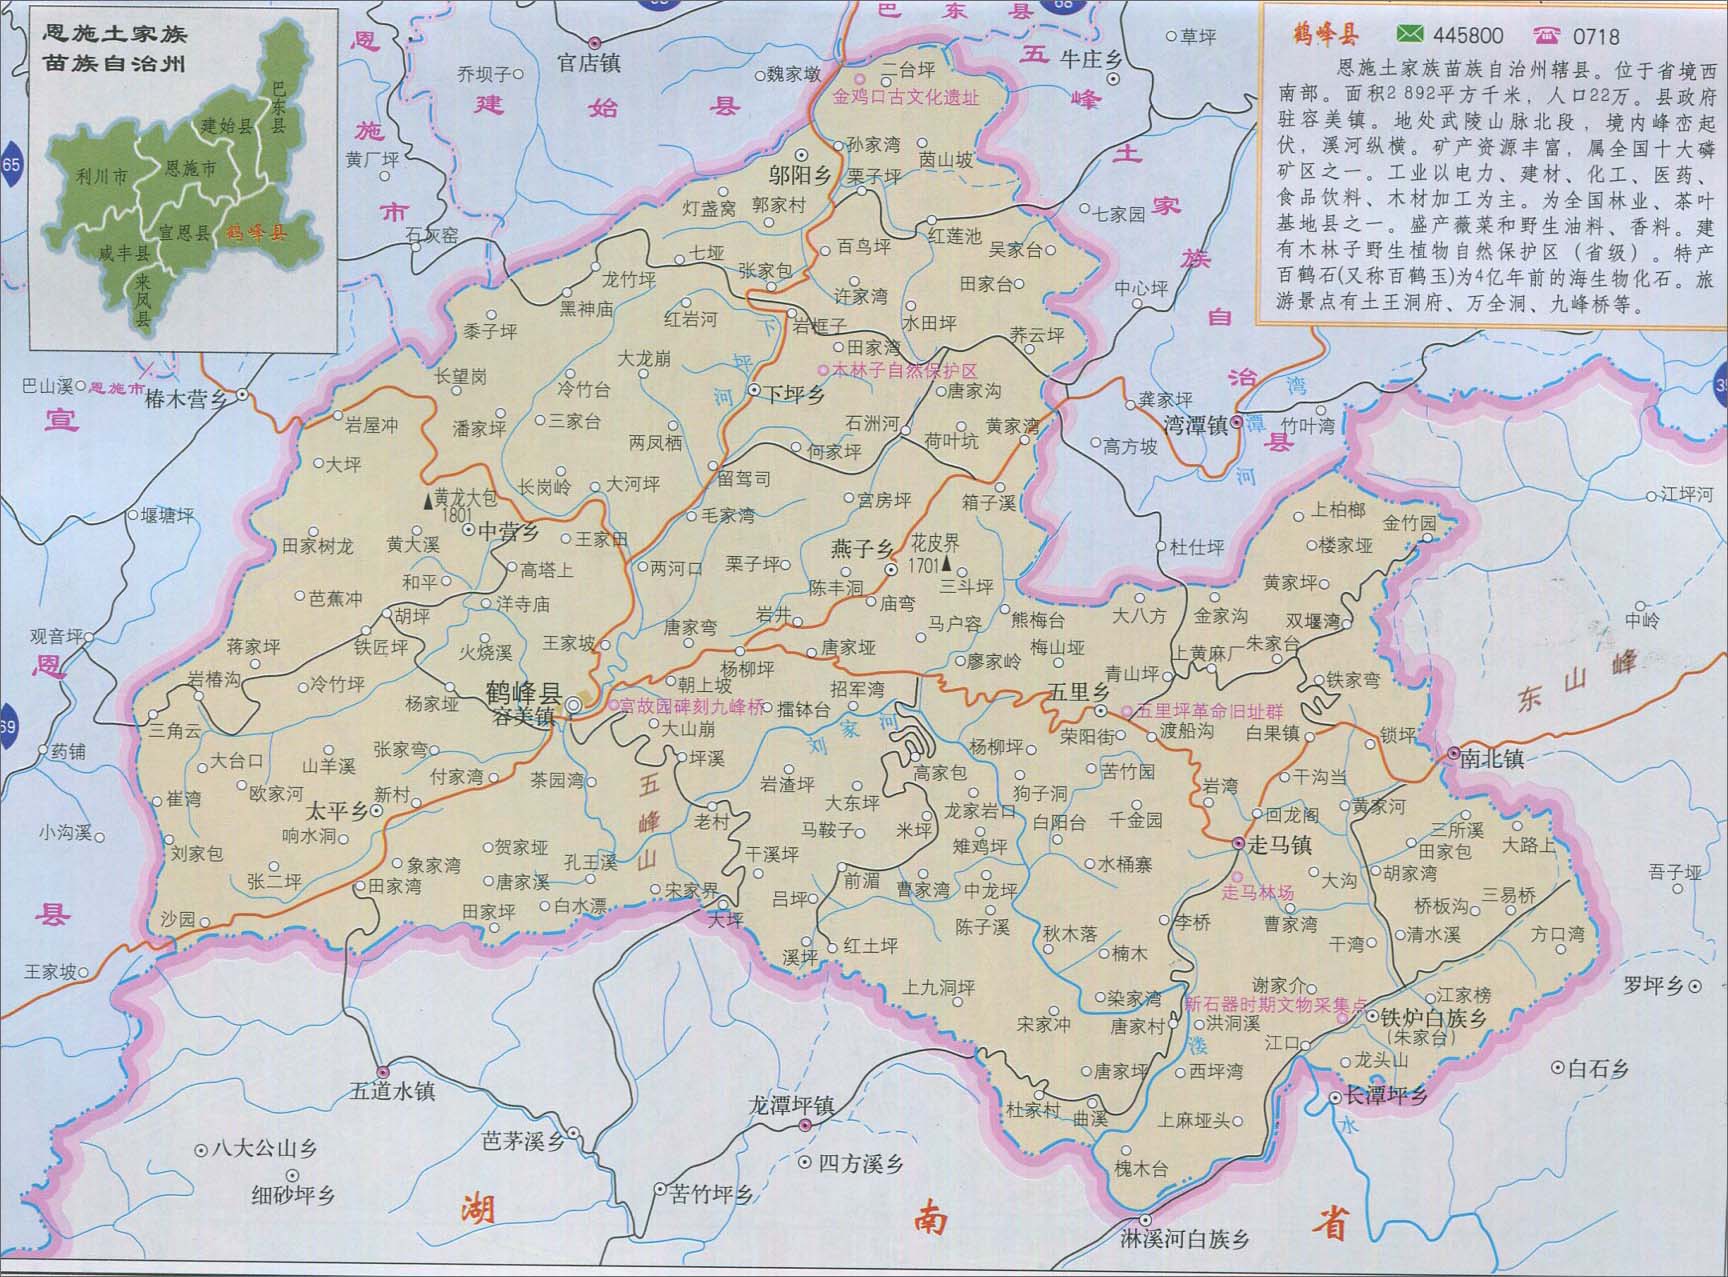 中国地图 湖北 恩施州 >> 鹤峰县地图  相关链接: 武汉市  恩施州图片